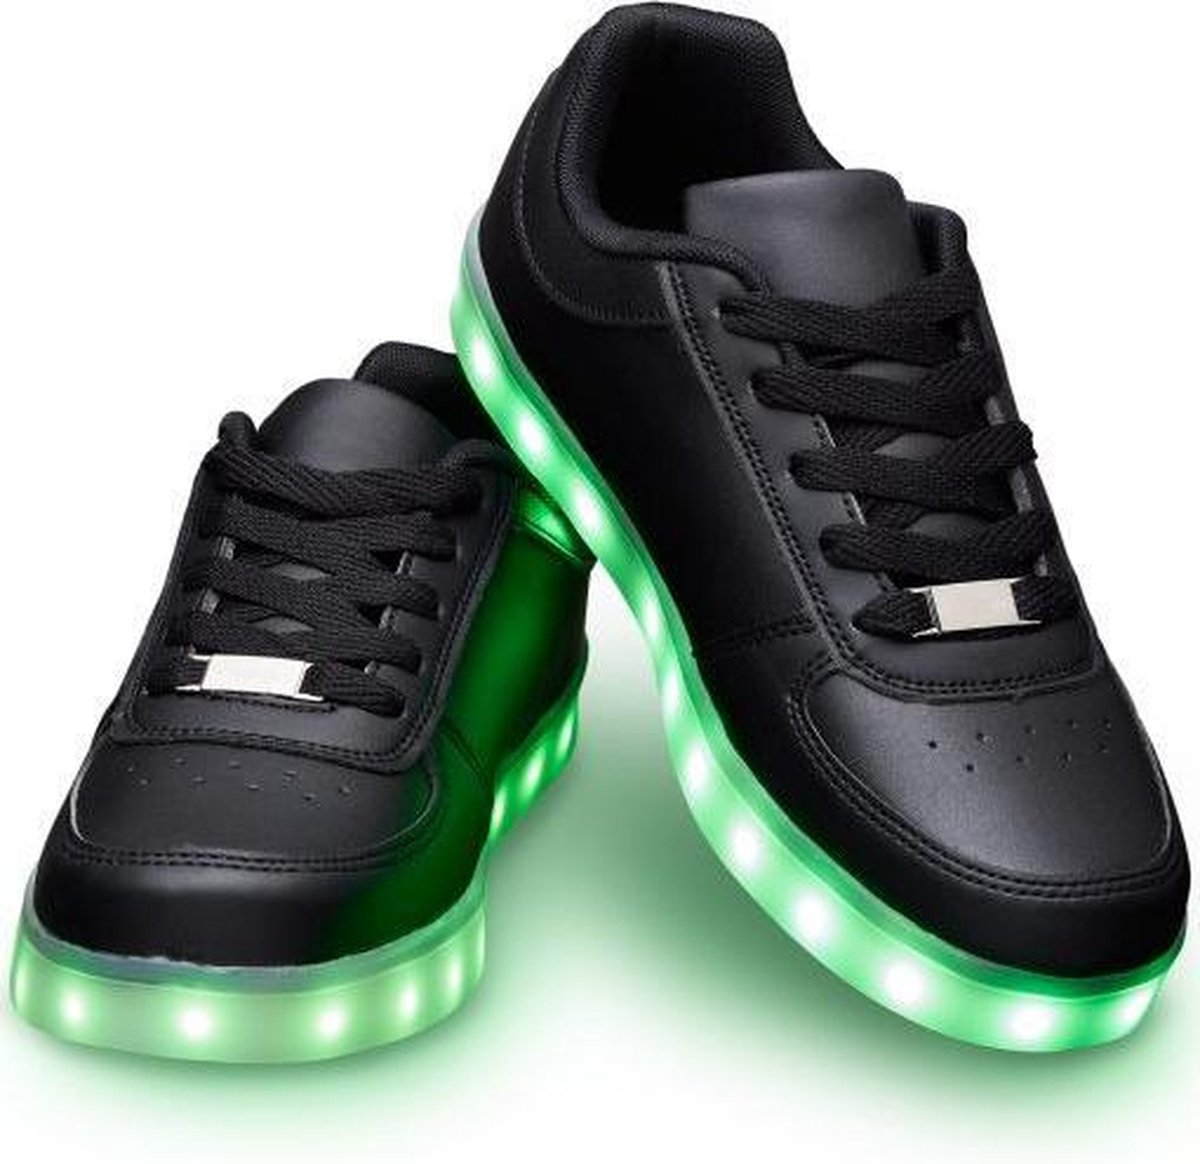 Schoenen met lichtjes - Lichtgevende led schoenen - Zwart - Maat 45